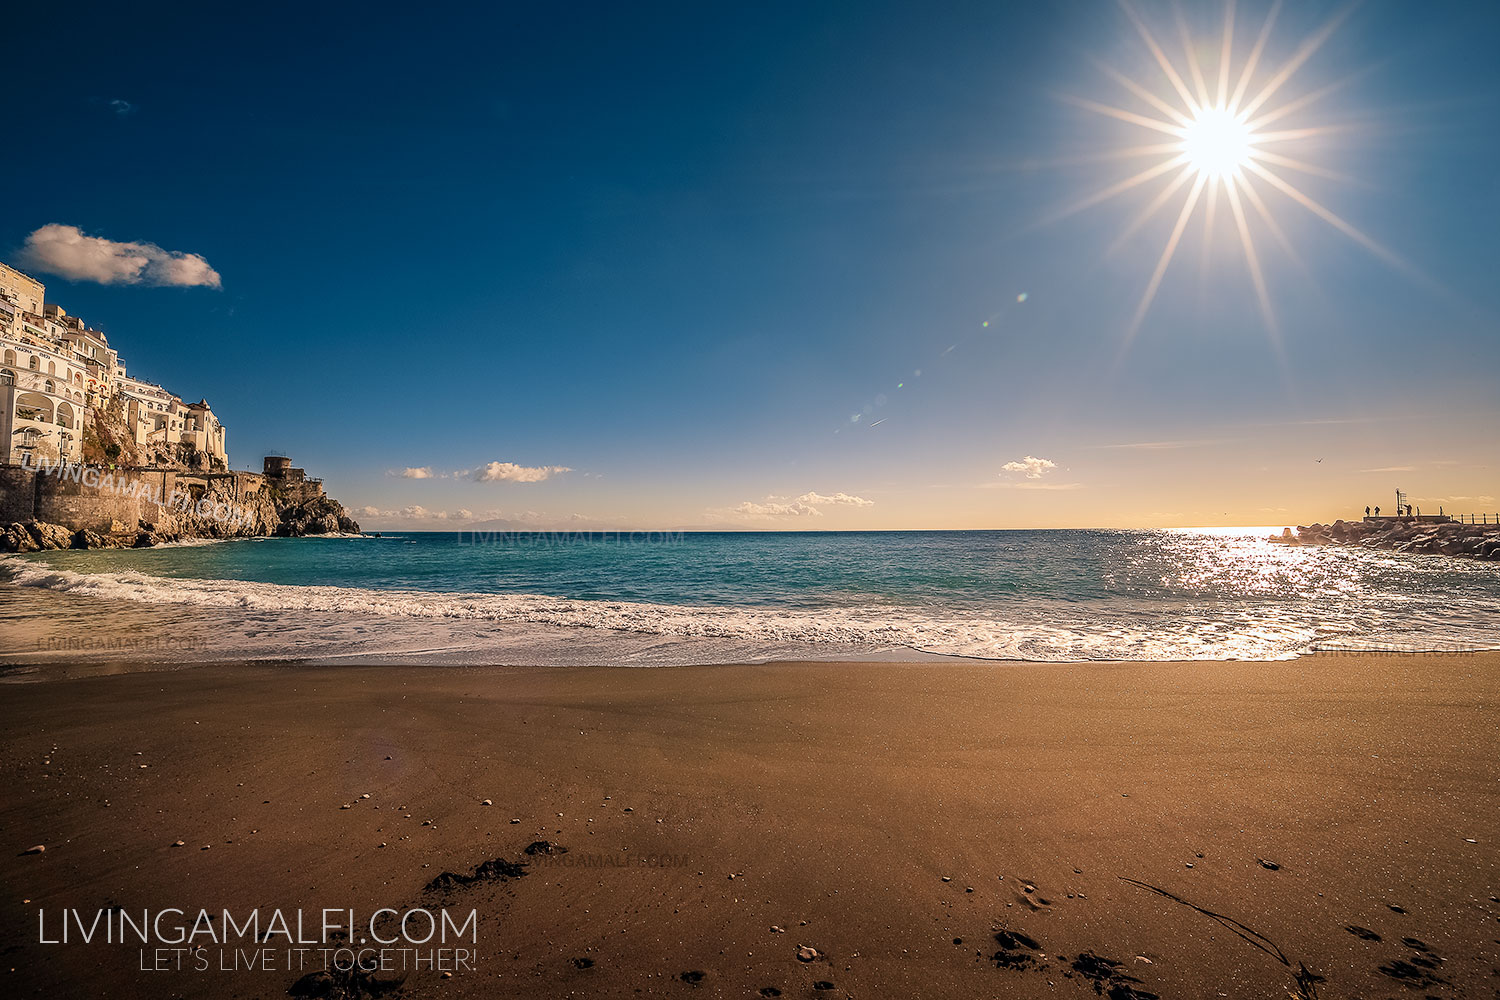 Sunrise in Amalfi, Amalfi Coast, Italy - LivingAmalfi.com